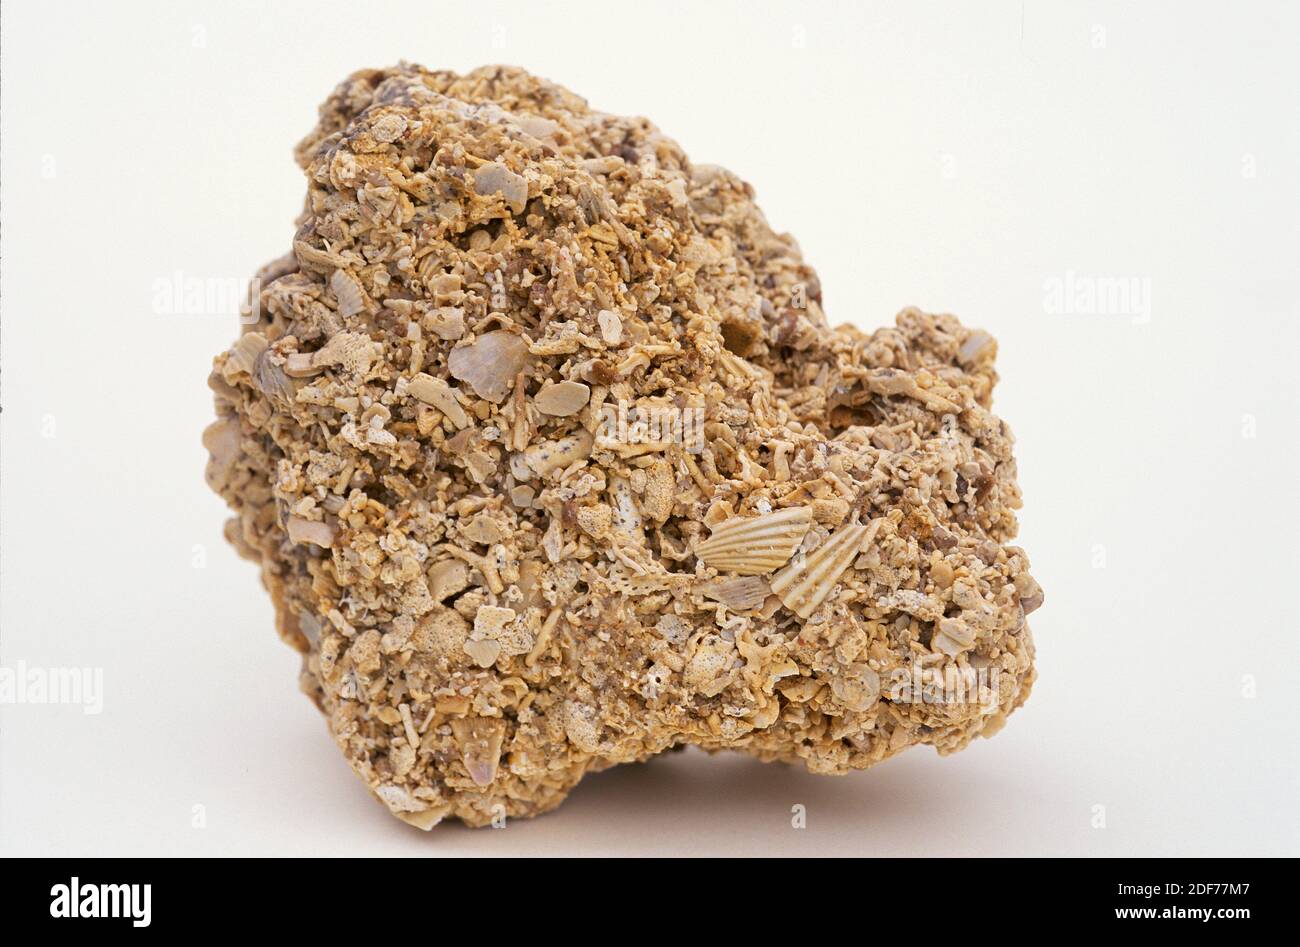 La piedra caliza de Shelly es una roca sedimentaria compuesta por restos de esqueleto de animales marinos. Muestra. Foto de stock